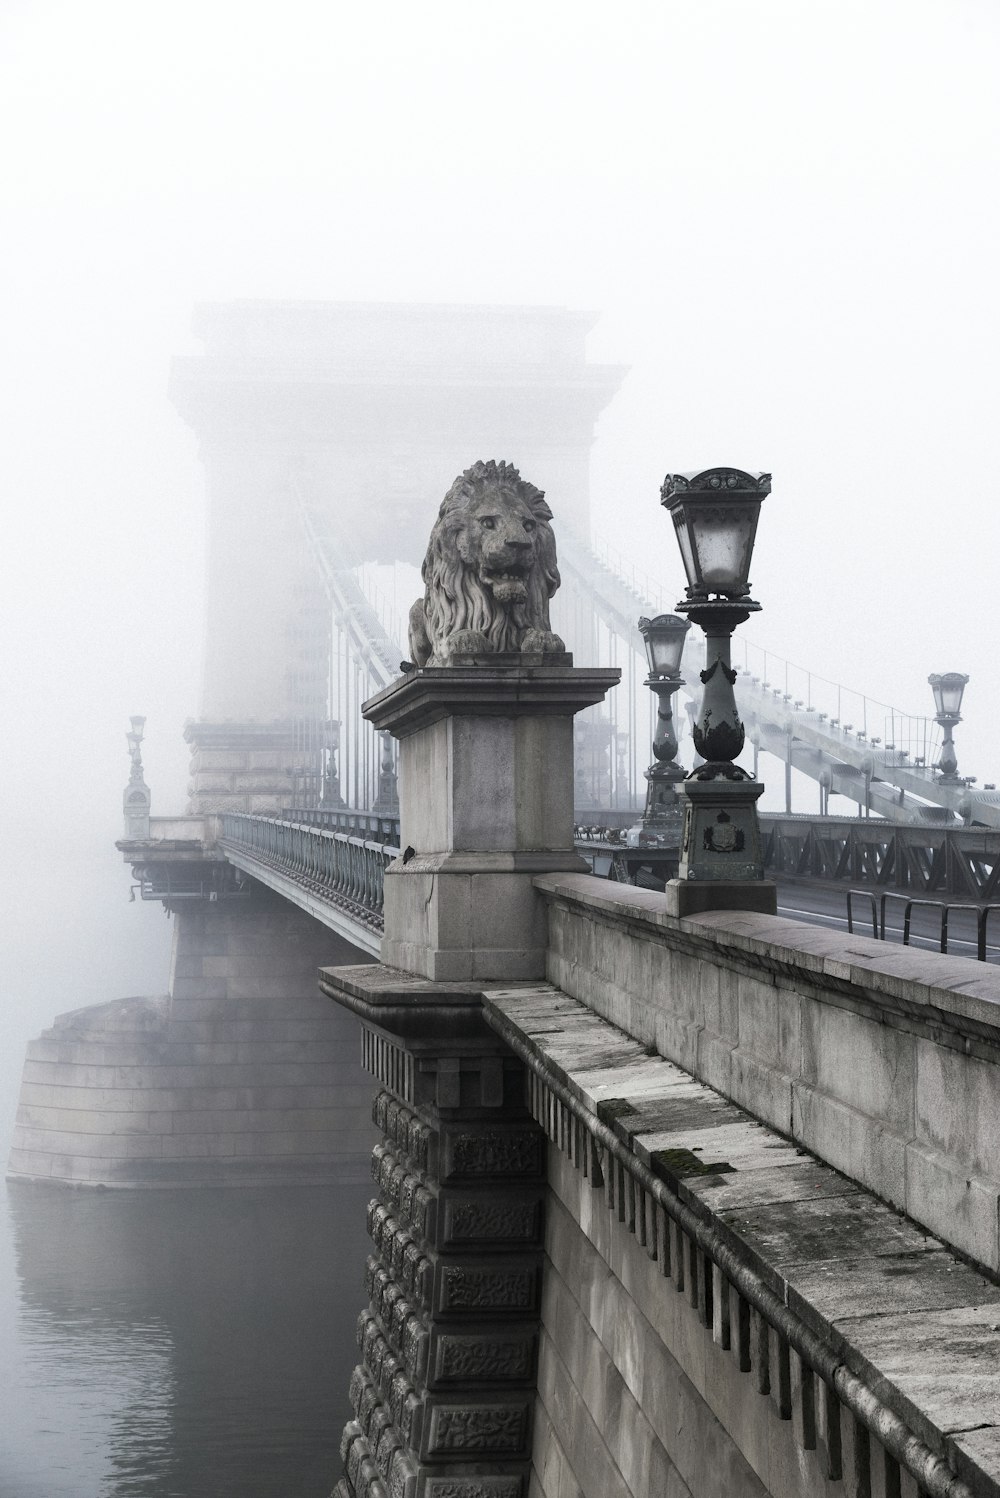 lion statue on the bridge photograph